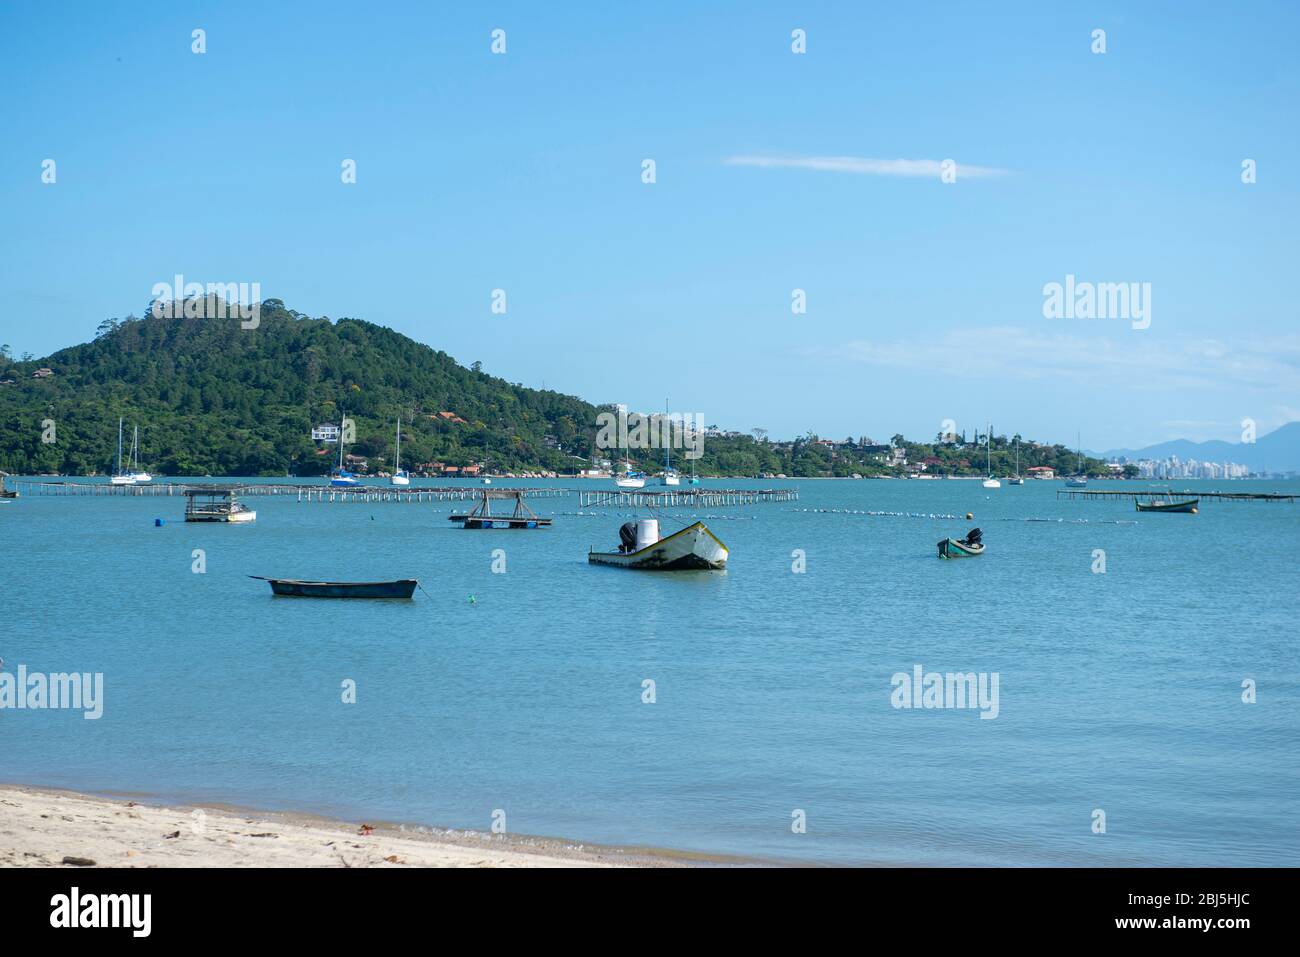 Schöne Strandlandschaft in Brasilien. Ruhiges türkisfarbenes Meer mit Fischerbooten und Segelbooten, die in der Nähe des Ufers liegen. Foto mit Platz für Text. Konzept von Stockfoto